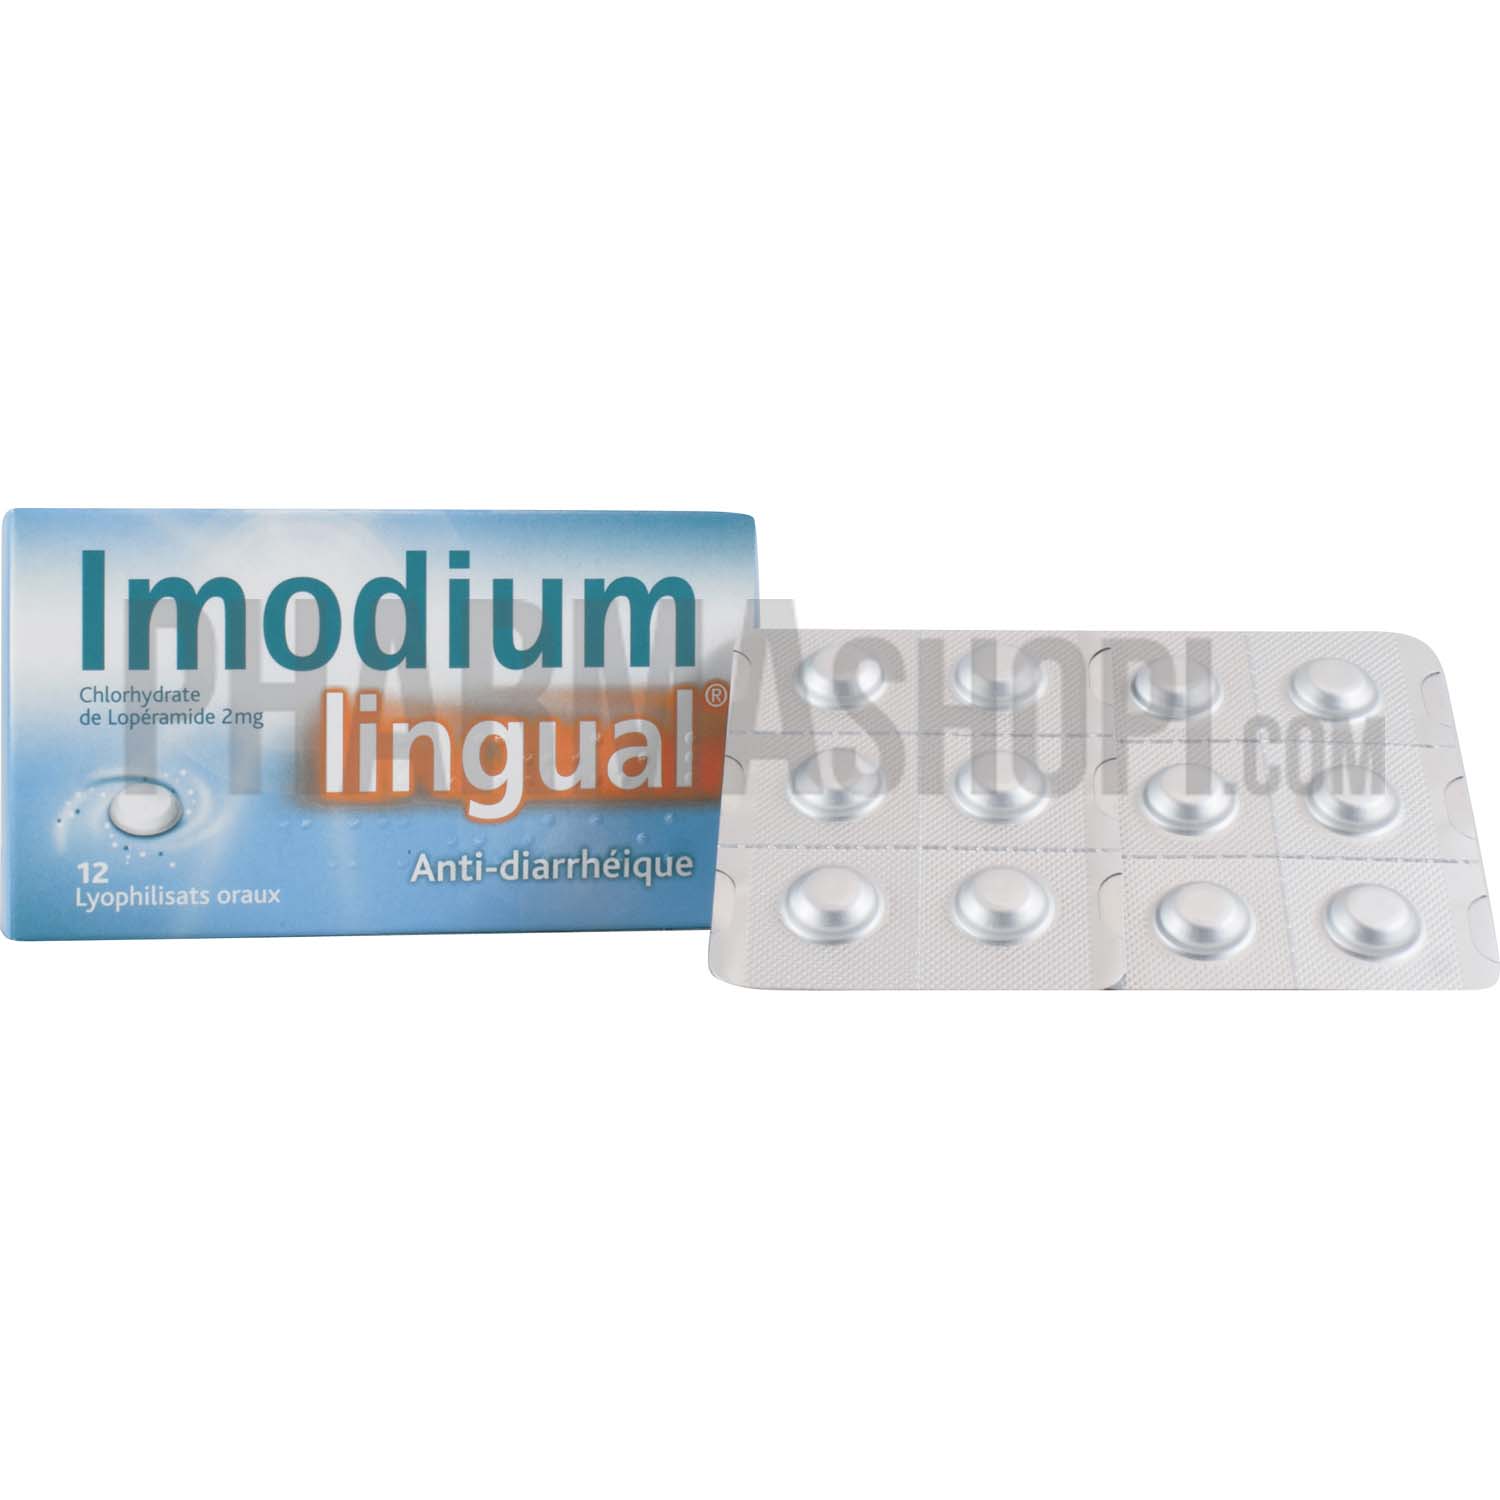 Imodium Lingual 2mg - 12 lyophilisats oraux